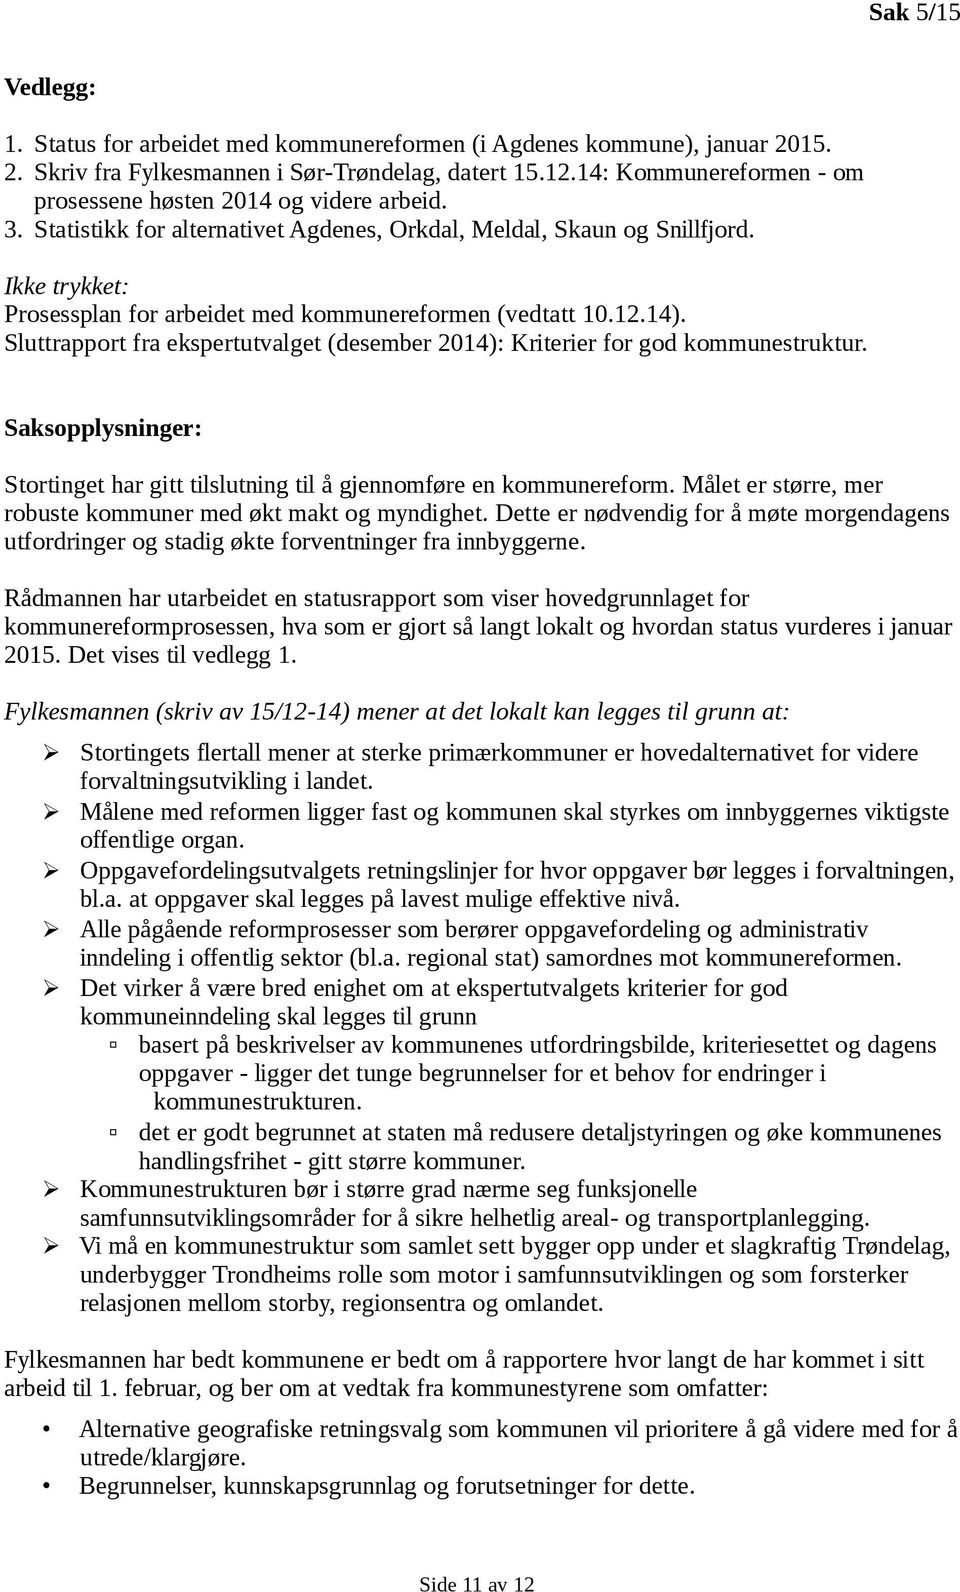 Ikke trykket: Prosessplan for arbeidet med kommunereformen (vedtatt 10.12.14). Sluttrapport fra ekspertutvalget (desember 2014): Kriterier for god kommunestruktur.